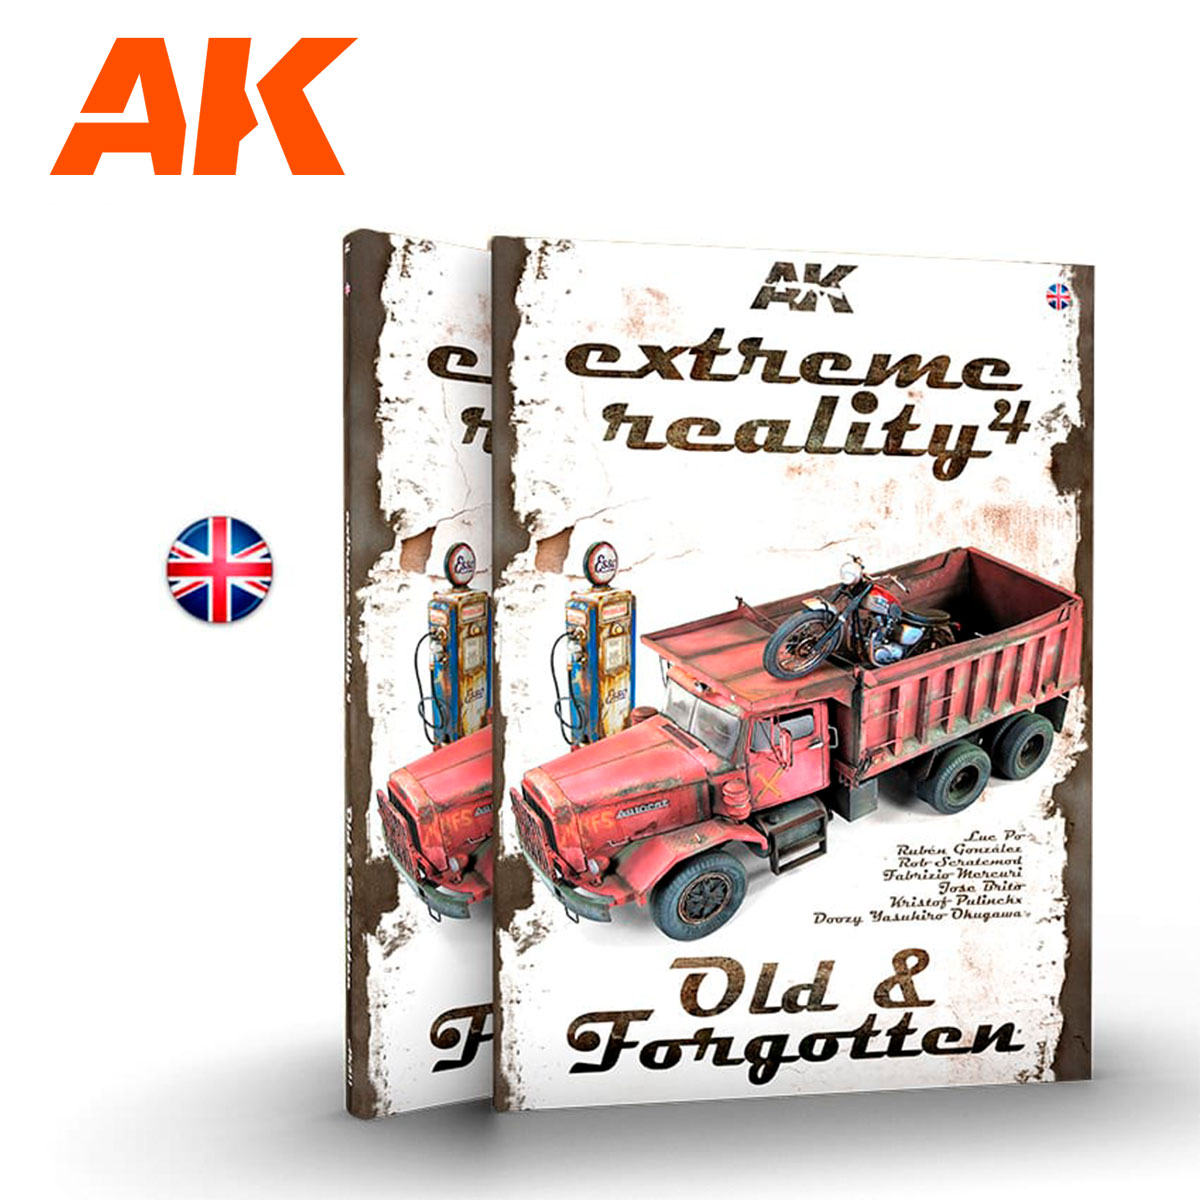 AK Interactive EXTREME REALITY 4 EN